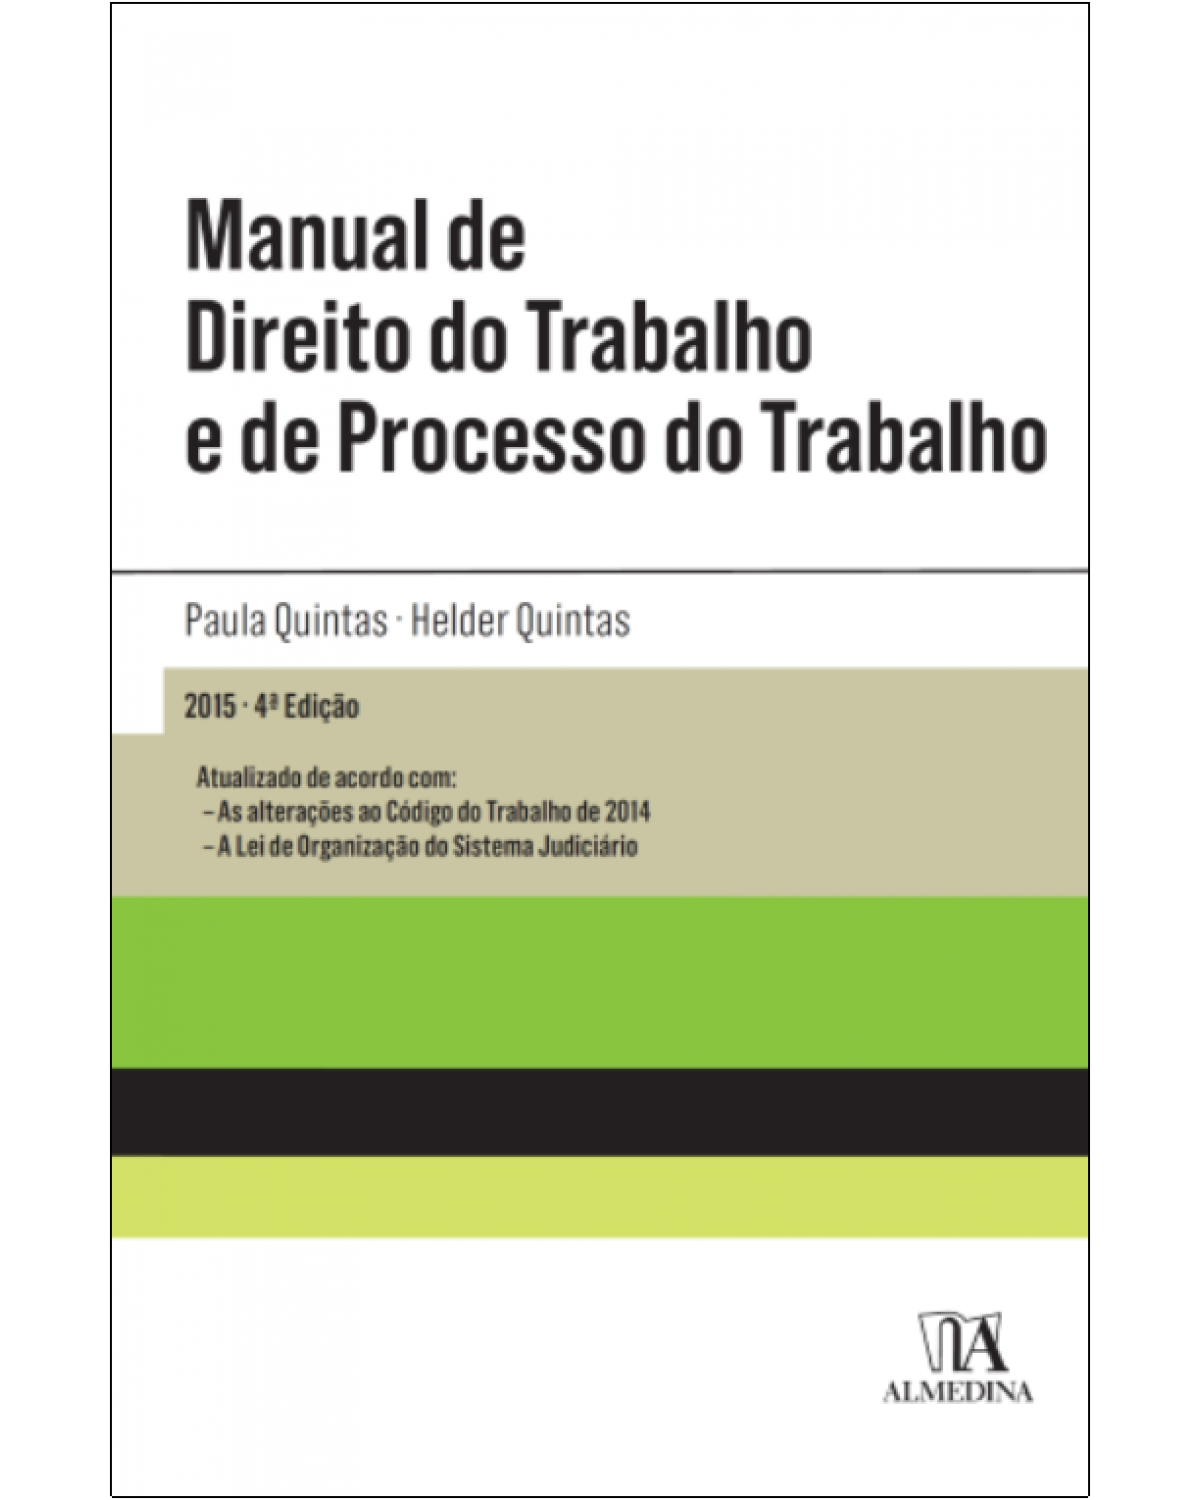 Manual de direito do trabalho e de processo do trabalho - 4ª Edição | 2015